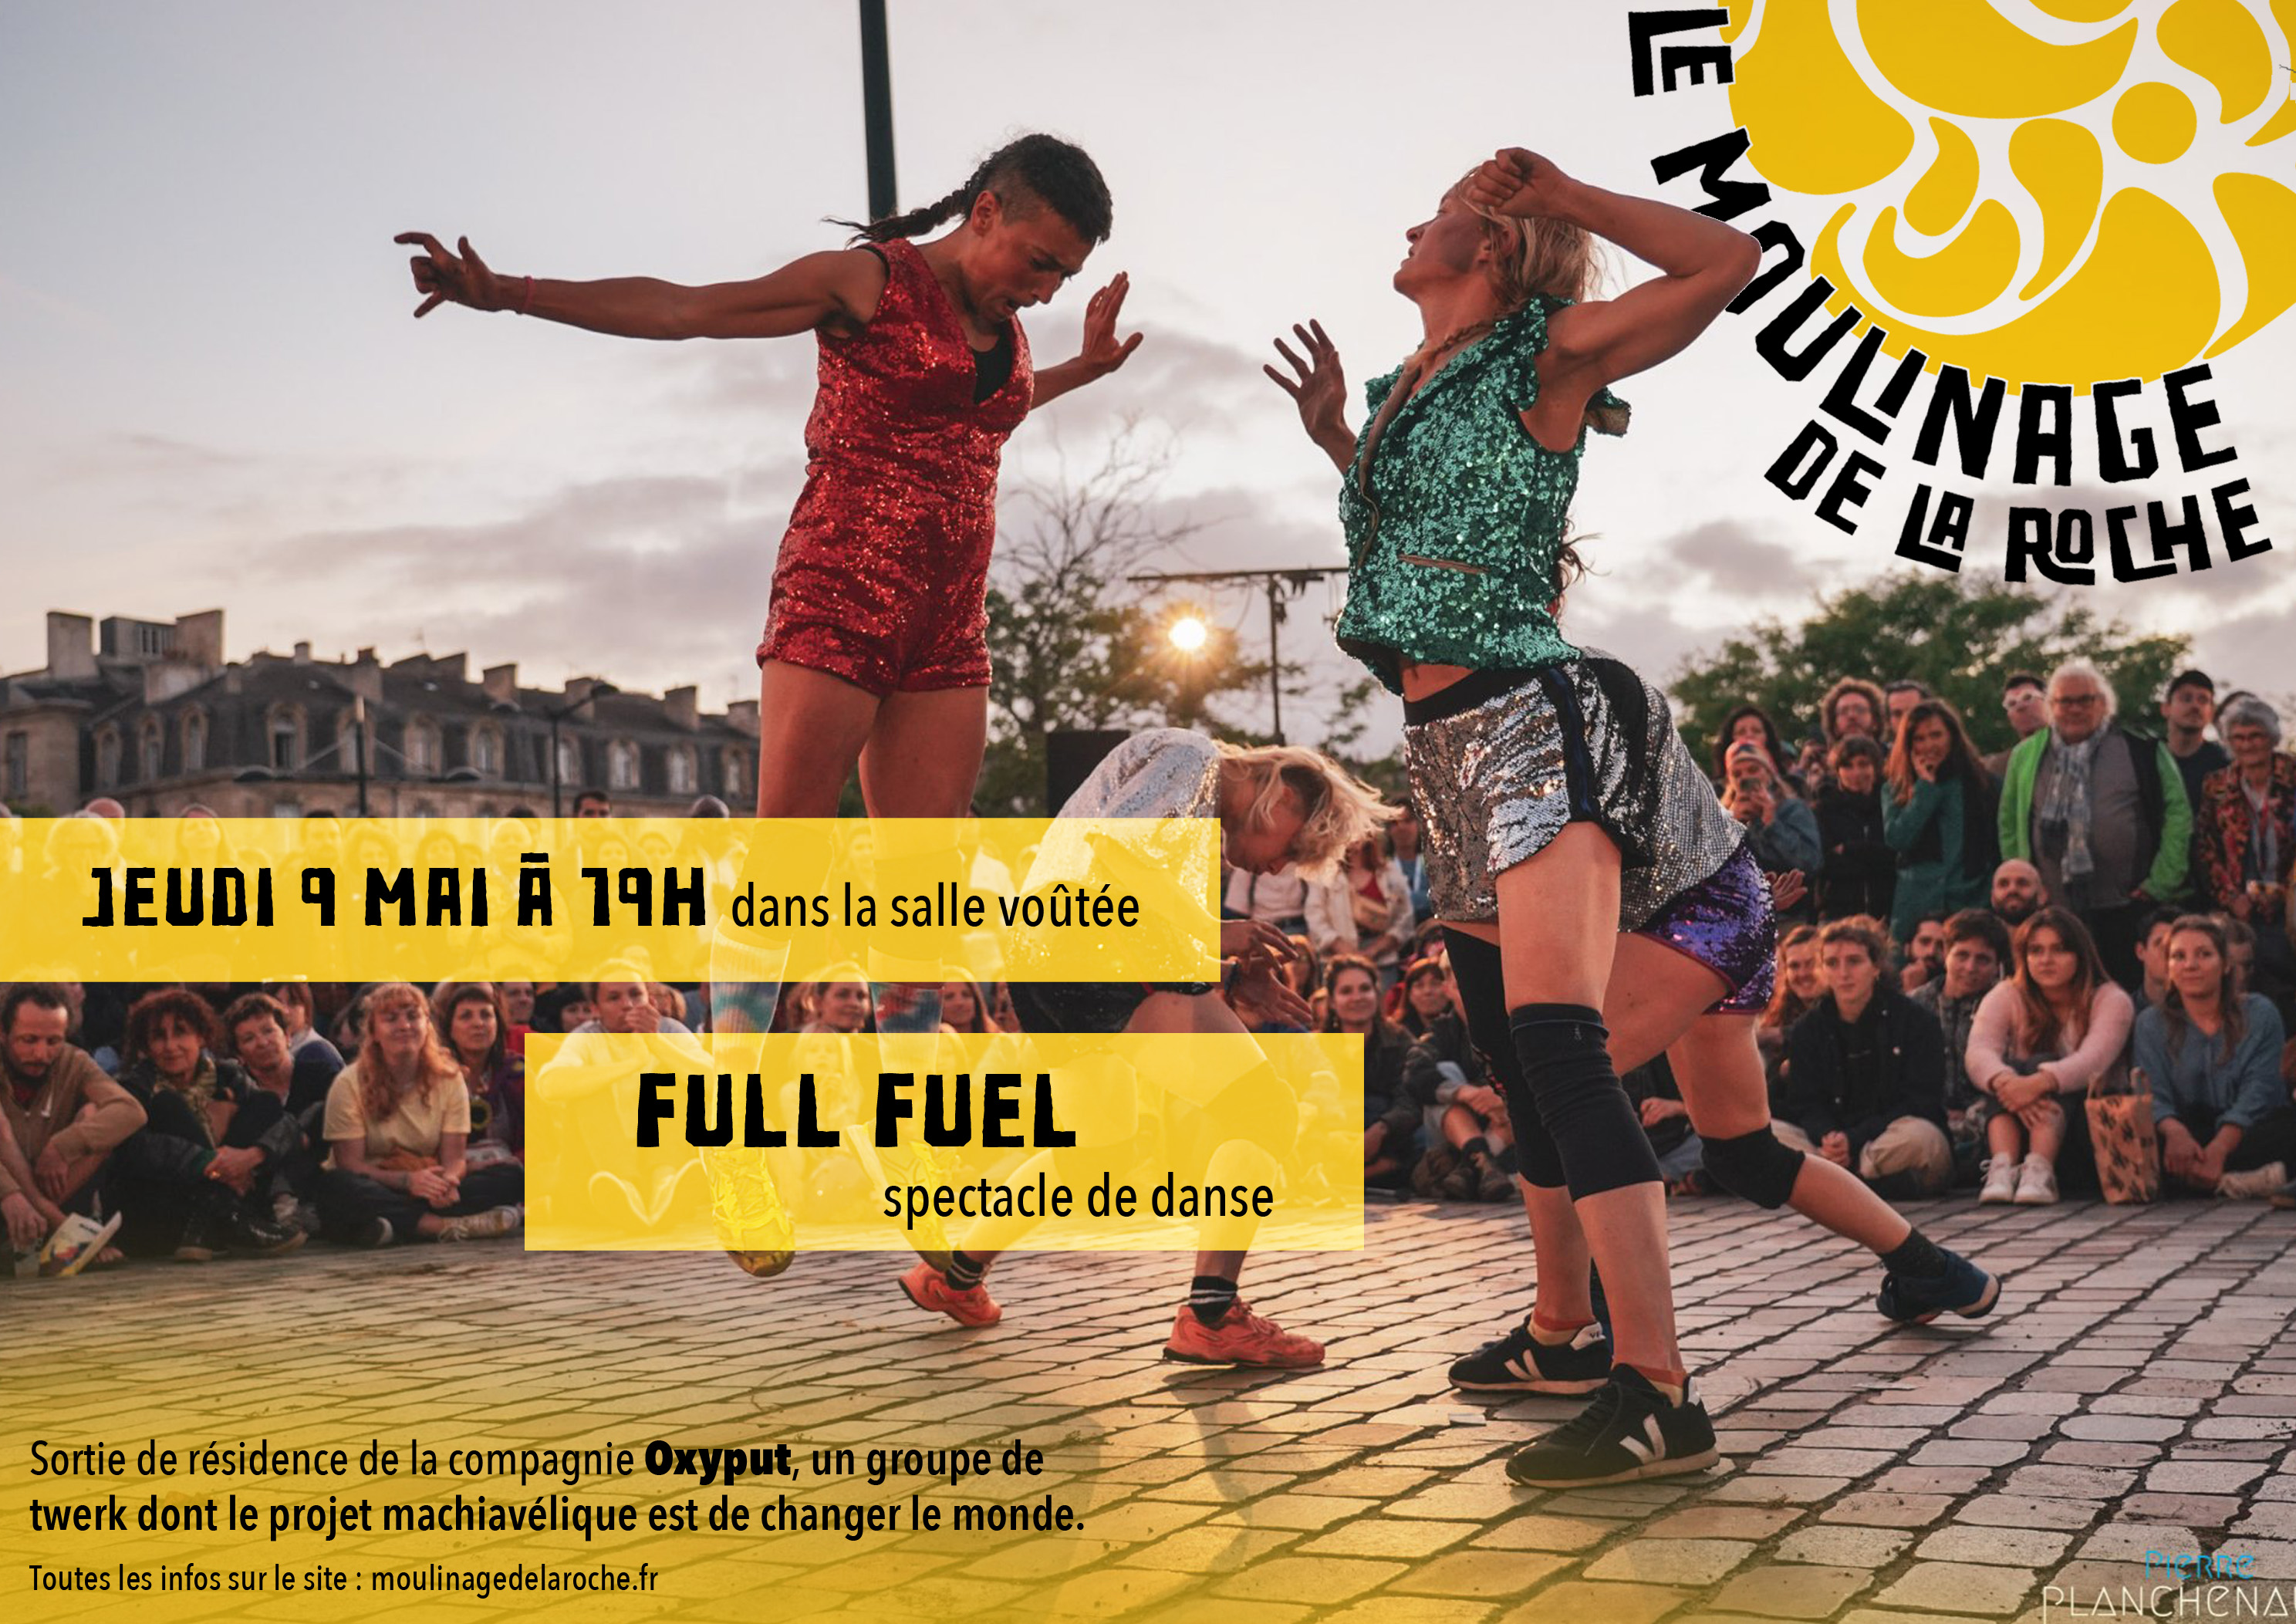 Rendez-vous futés ! : Spectacle de danse : Full Fuel